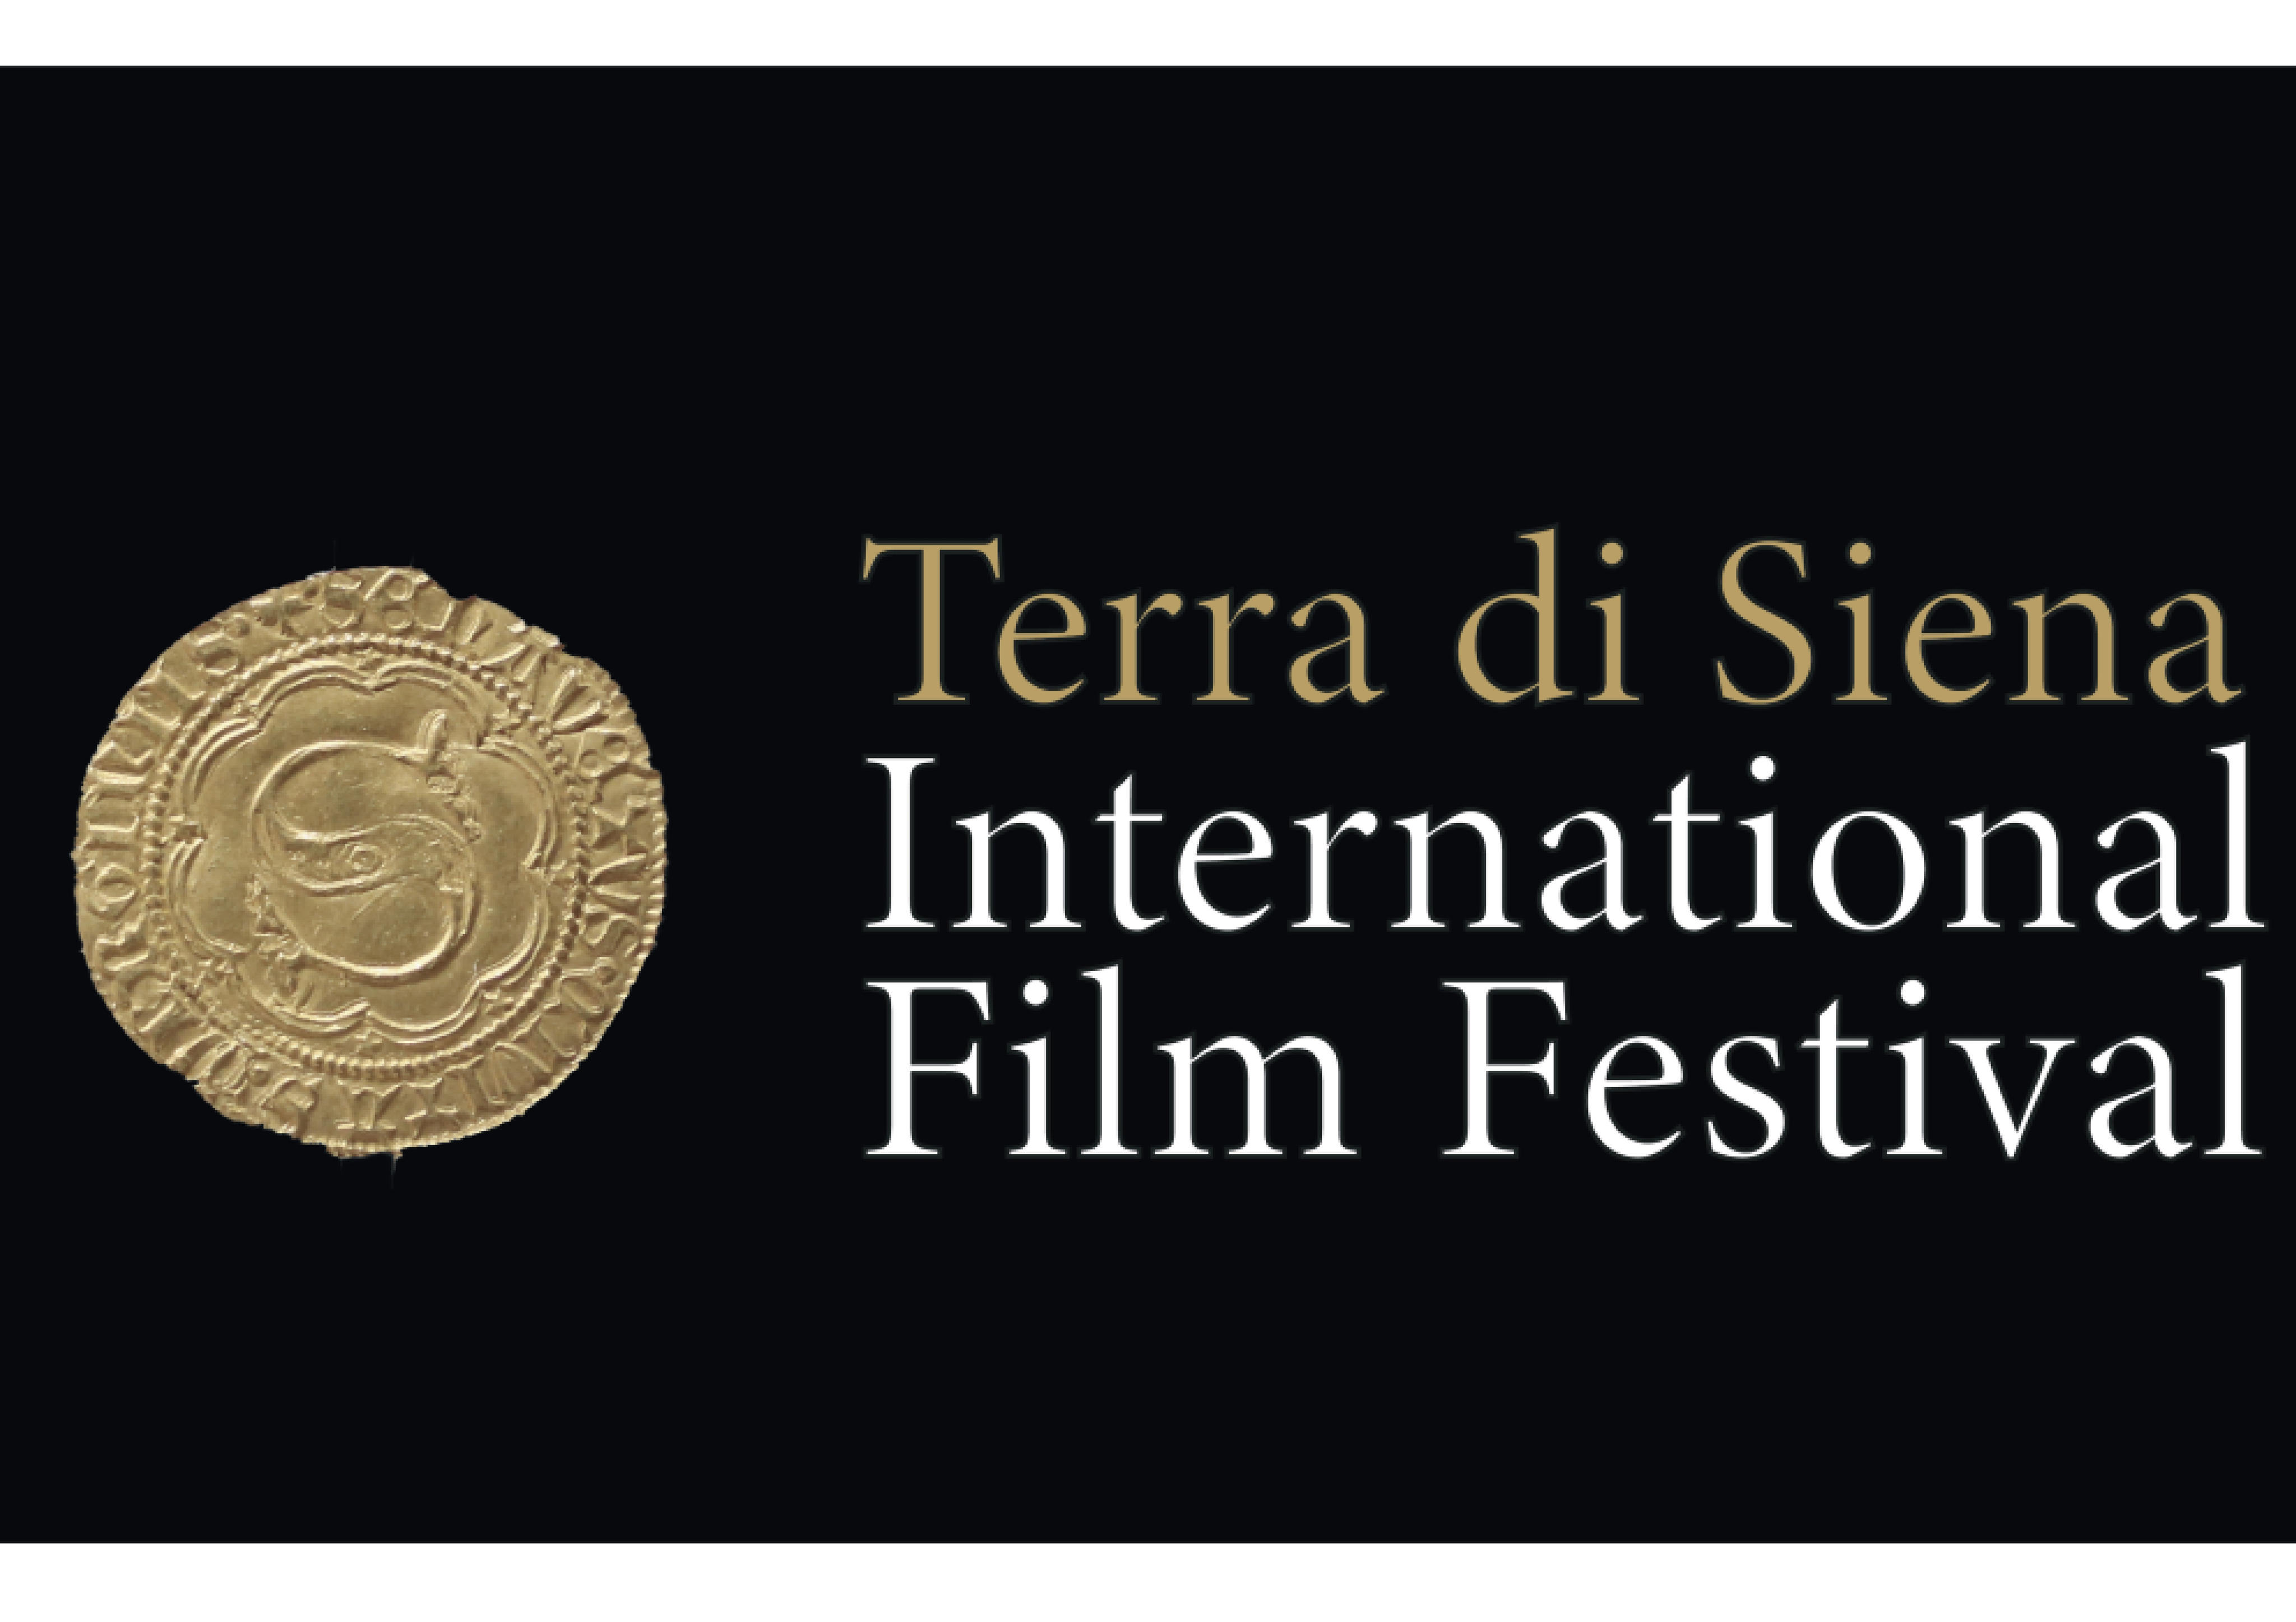 Terra di Siena International Film Festival, al via dal 28 settembre al 2 ottobre